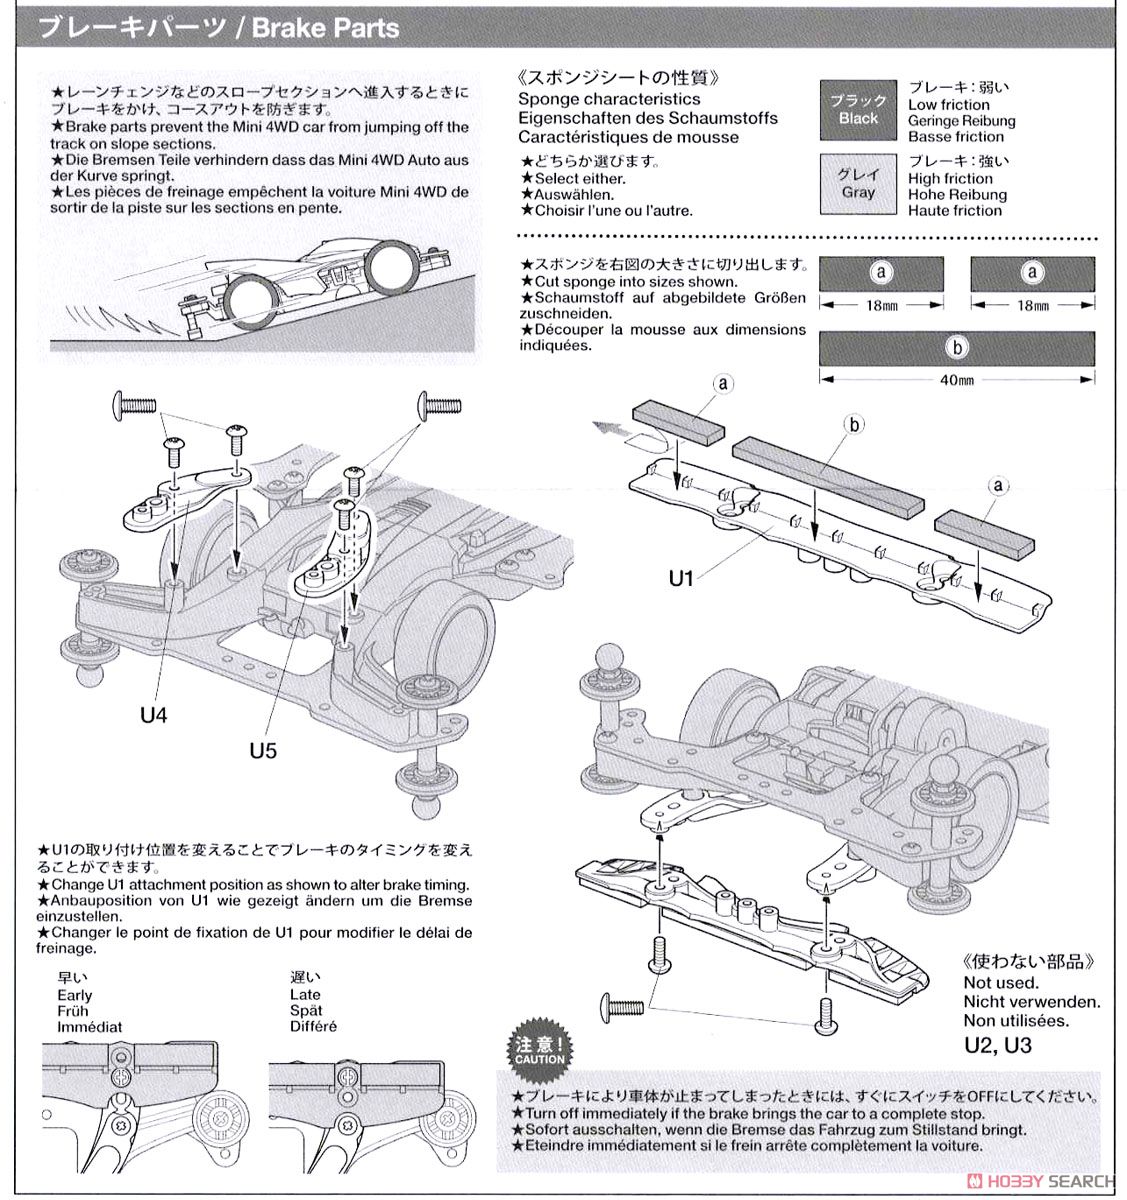 ミニ四駆スターターパック AR スピードタイプ (エアロ アバンテ) (ARシャーシ) (ミニ四駆) 設計図11